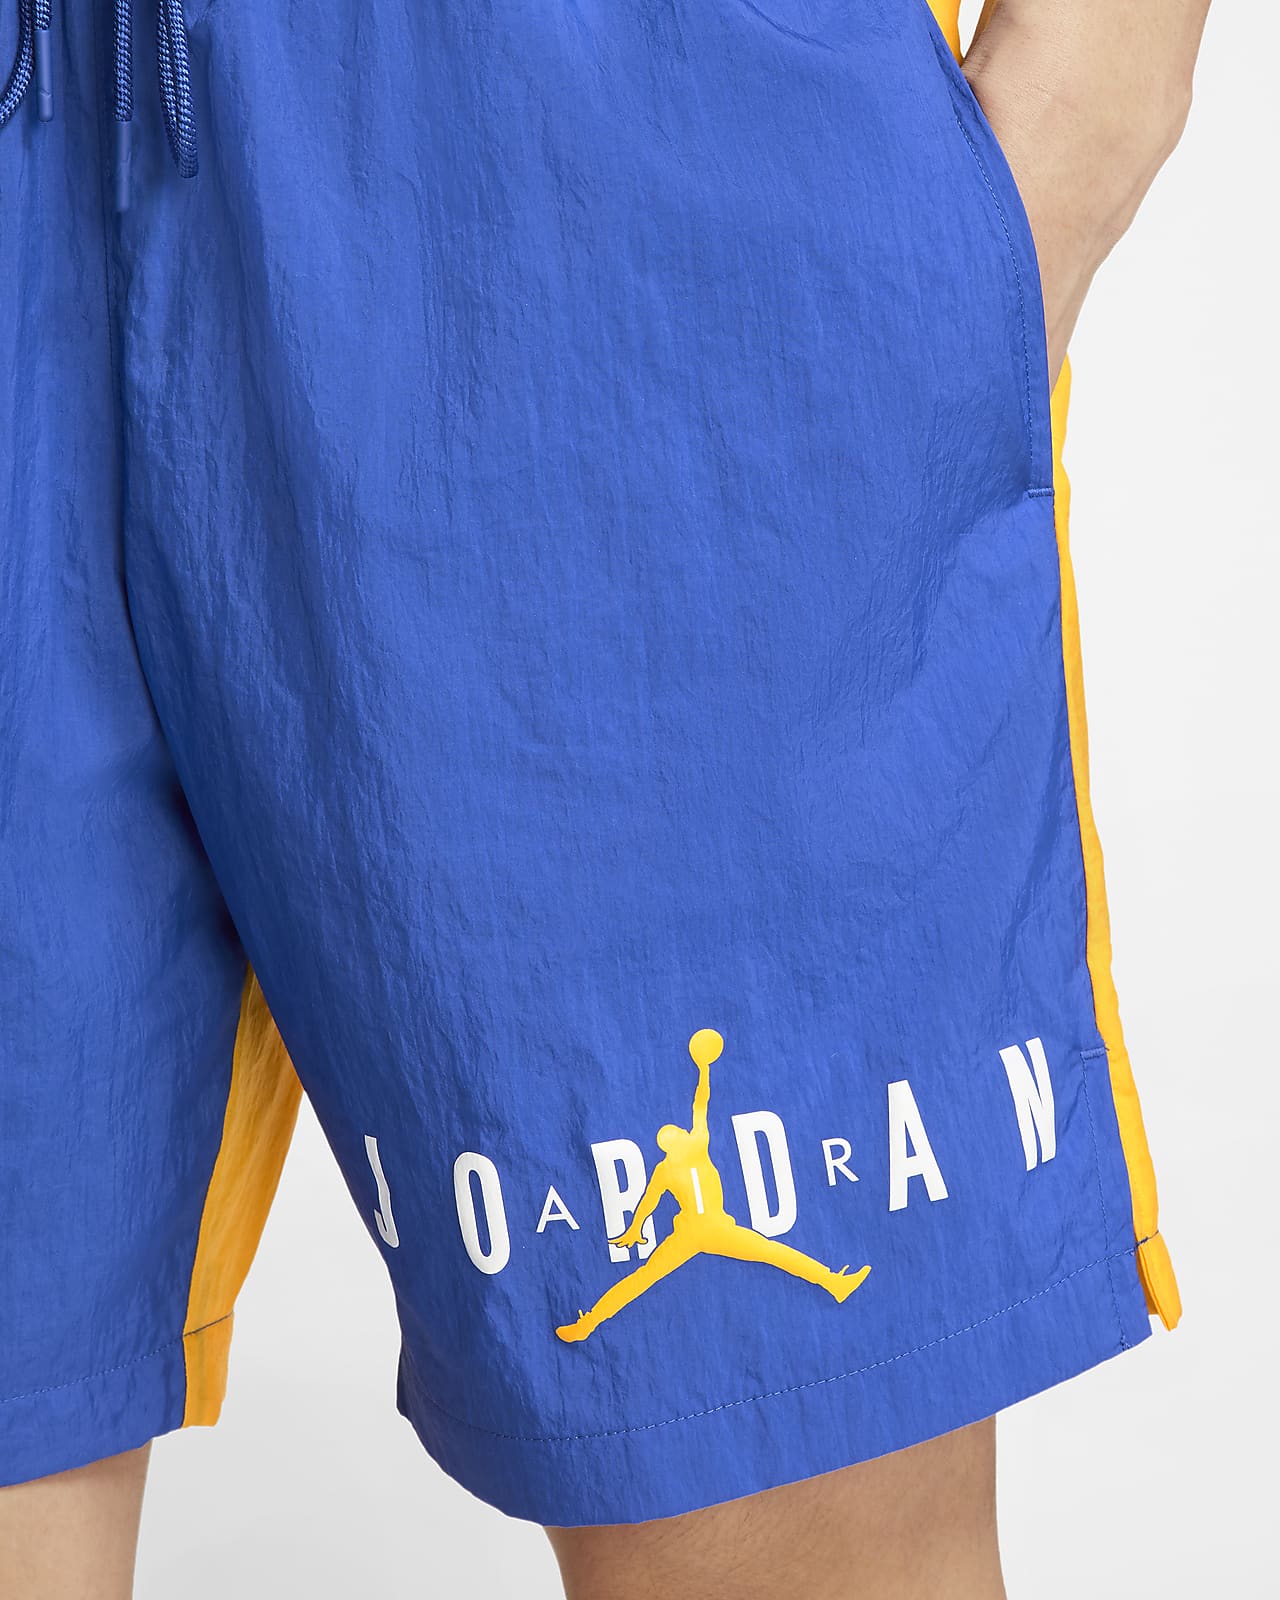 royal blue jordan shorts